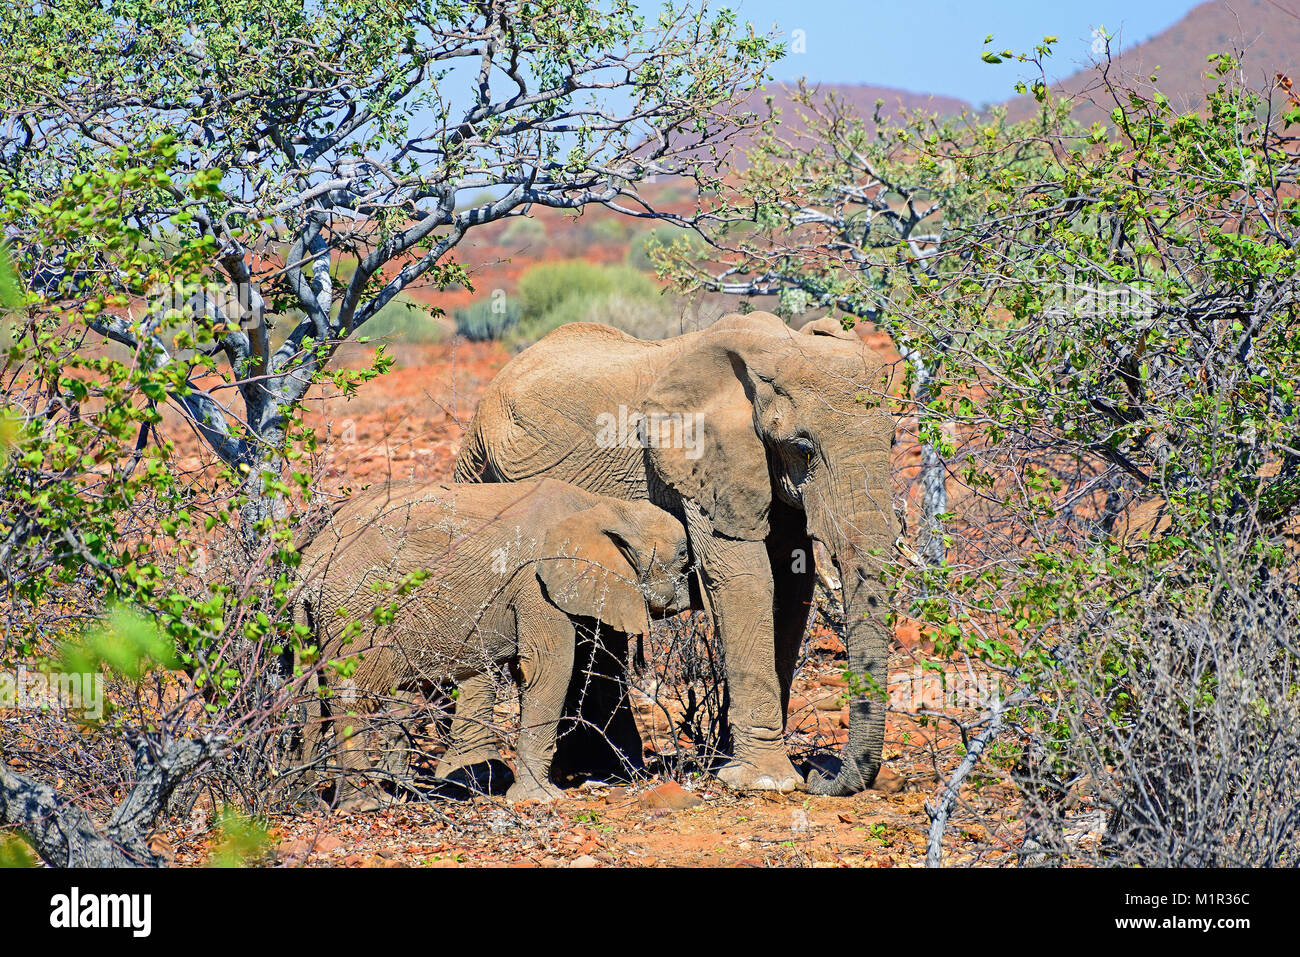 Afrikanischer Wuestenelefant, Damaraland, Namibia  Wüstenelefant, Loxodonta africana Stock Photo